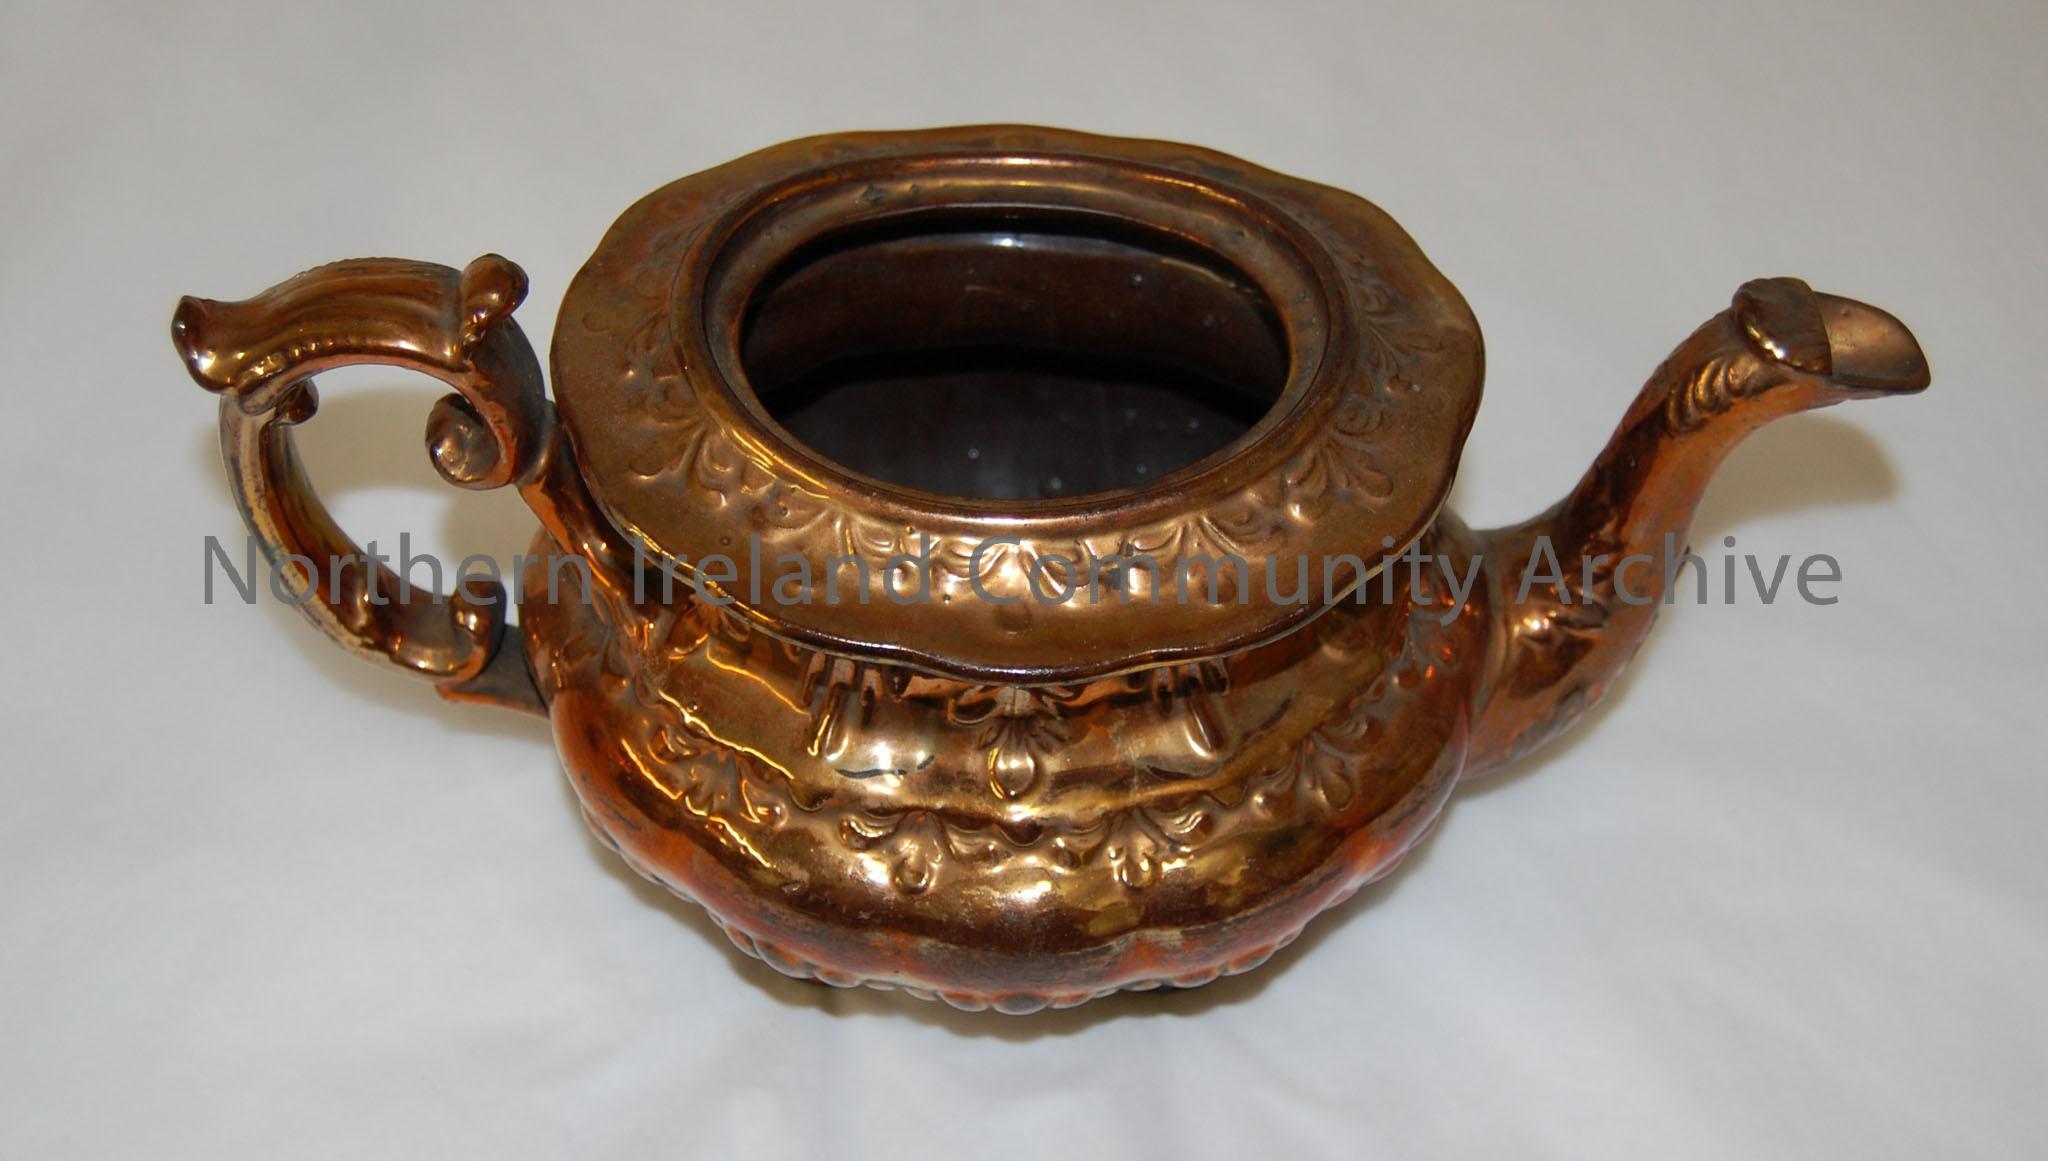 copper lustre teapot, lid missing – 1992.179